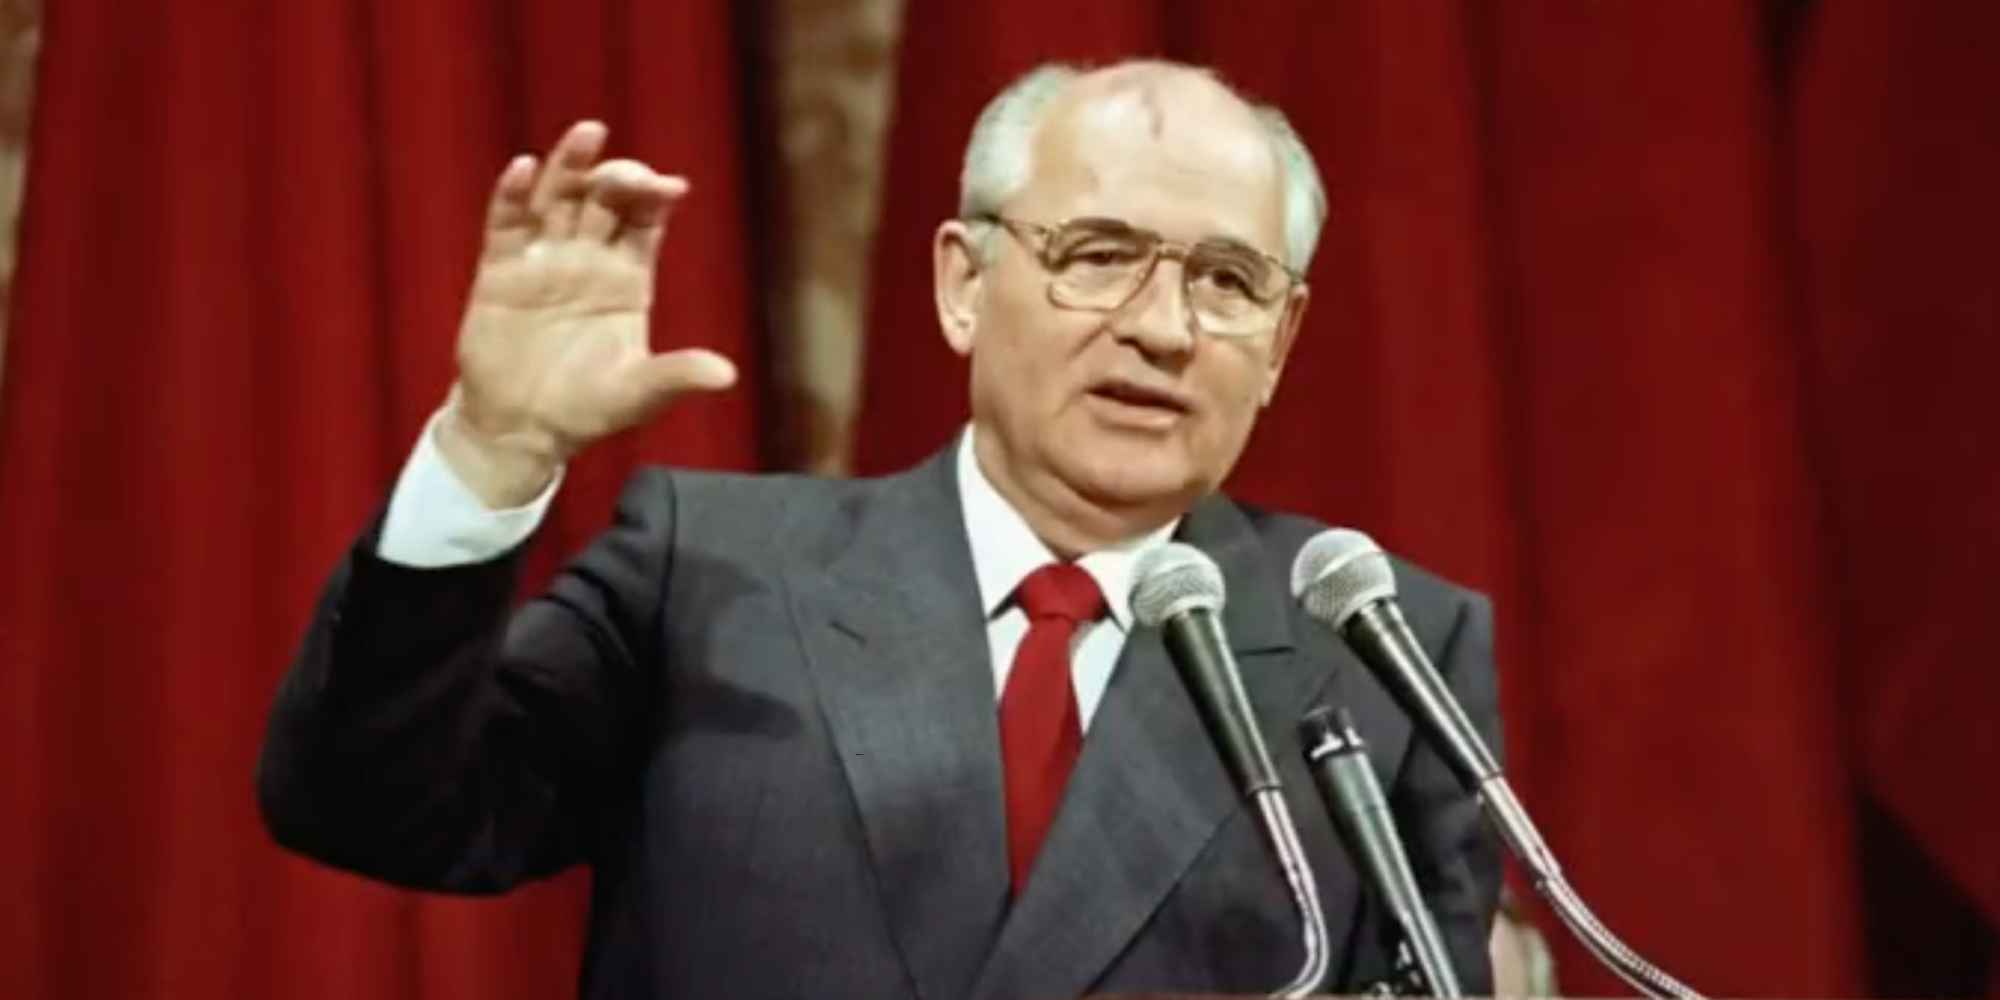 BREAKING: Former Soviet leader Mikhail Gorbachev dead at 91